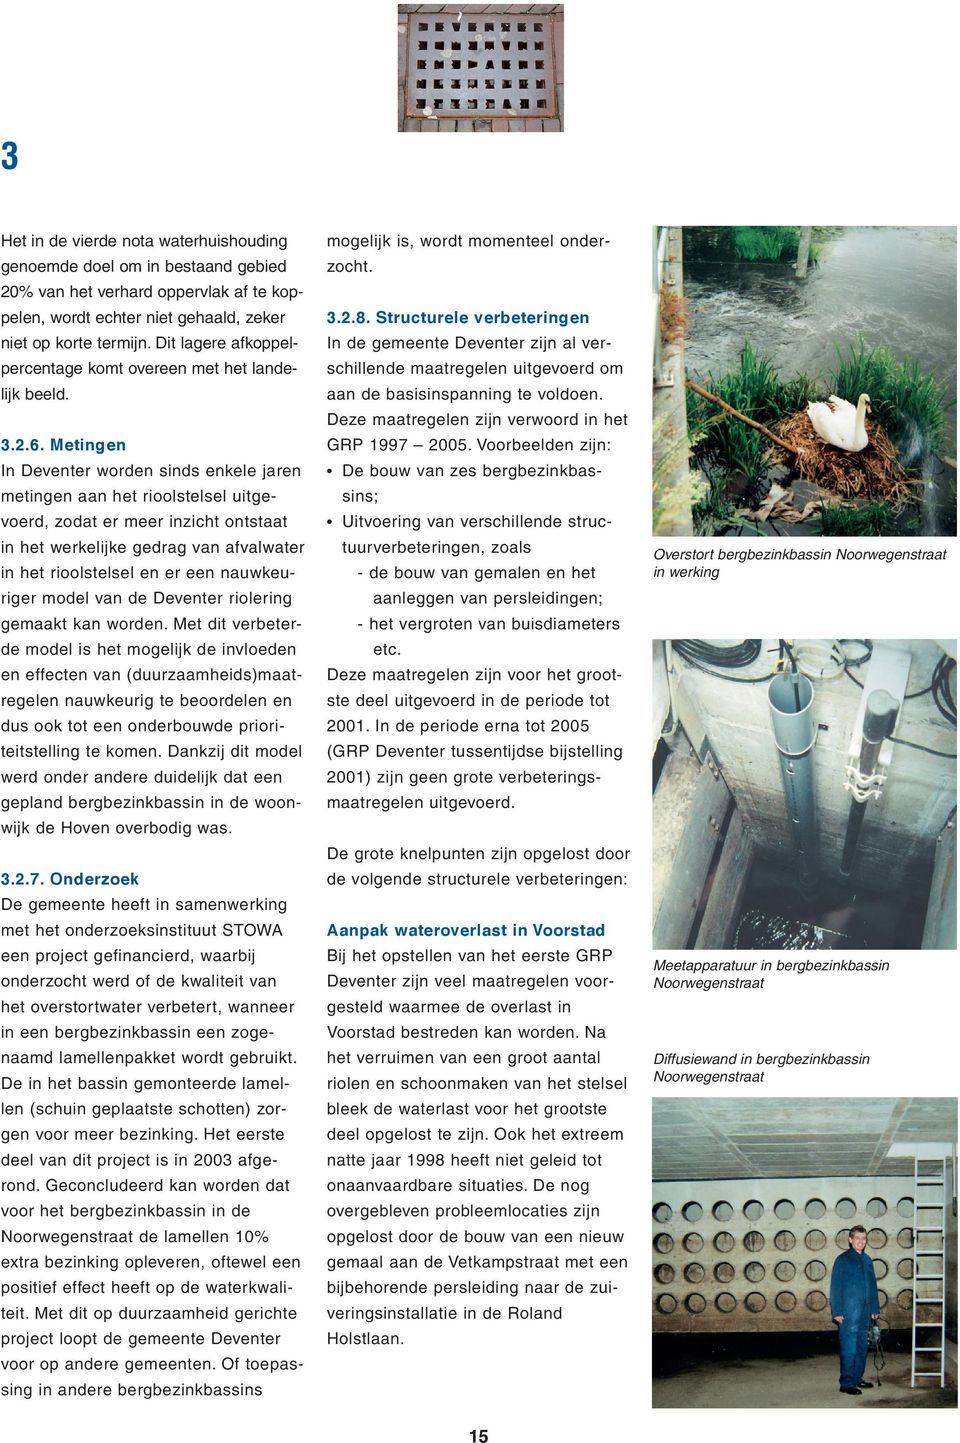 Metingen In Deventer worden sinds enkele jaren metingen aan het rioolstelsel uitgevoerd, zodat er meer inzicht ontstaat in het werkelijke gedrag van afvalwater in het rioolstelsel en er een